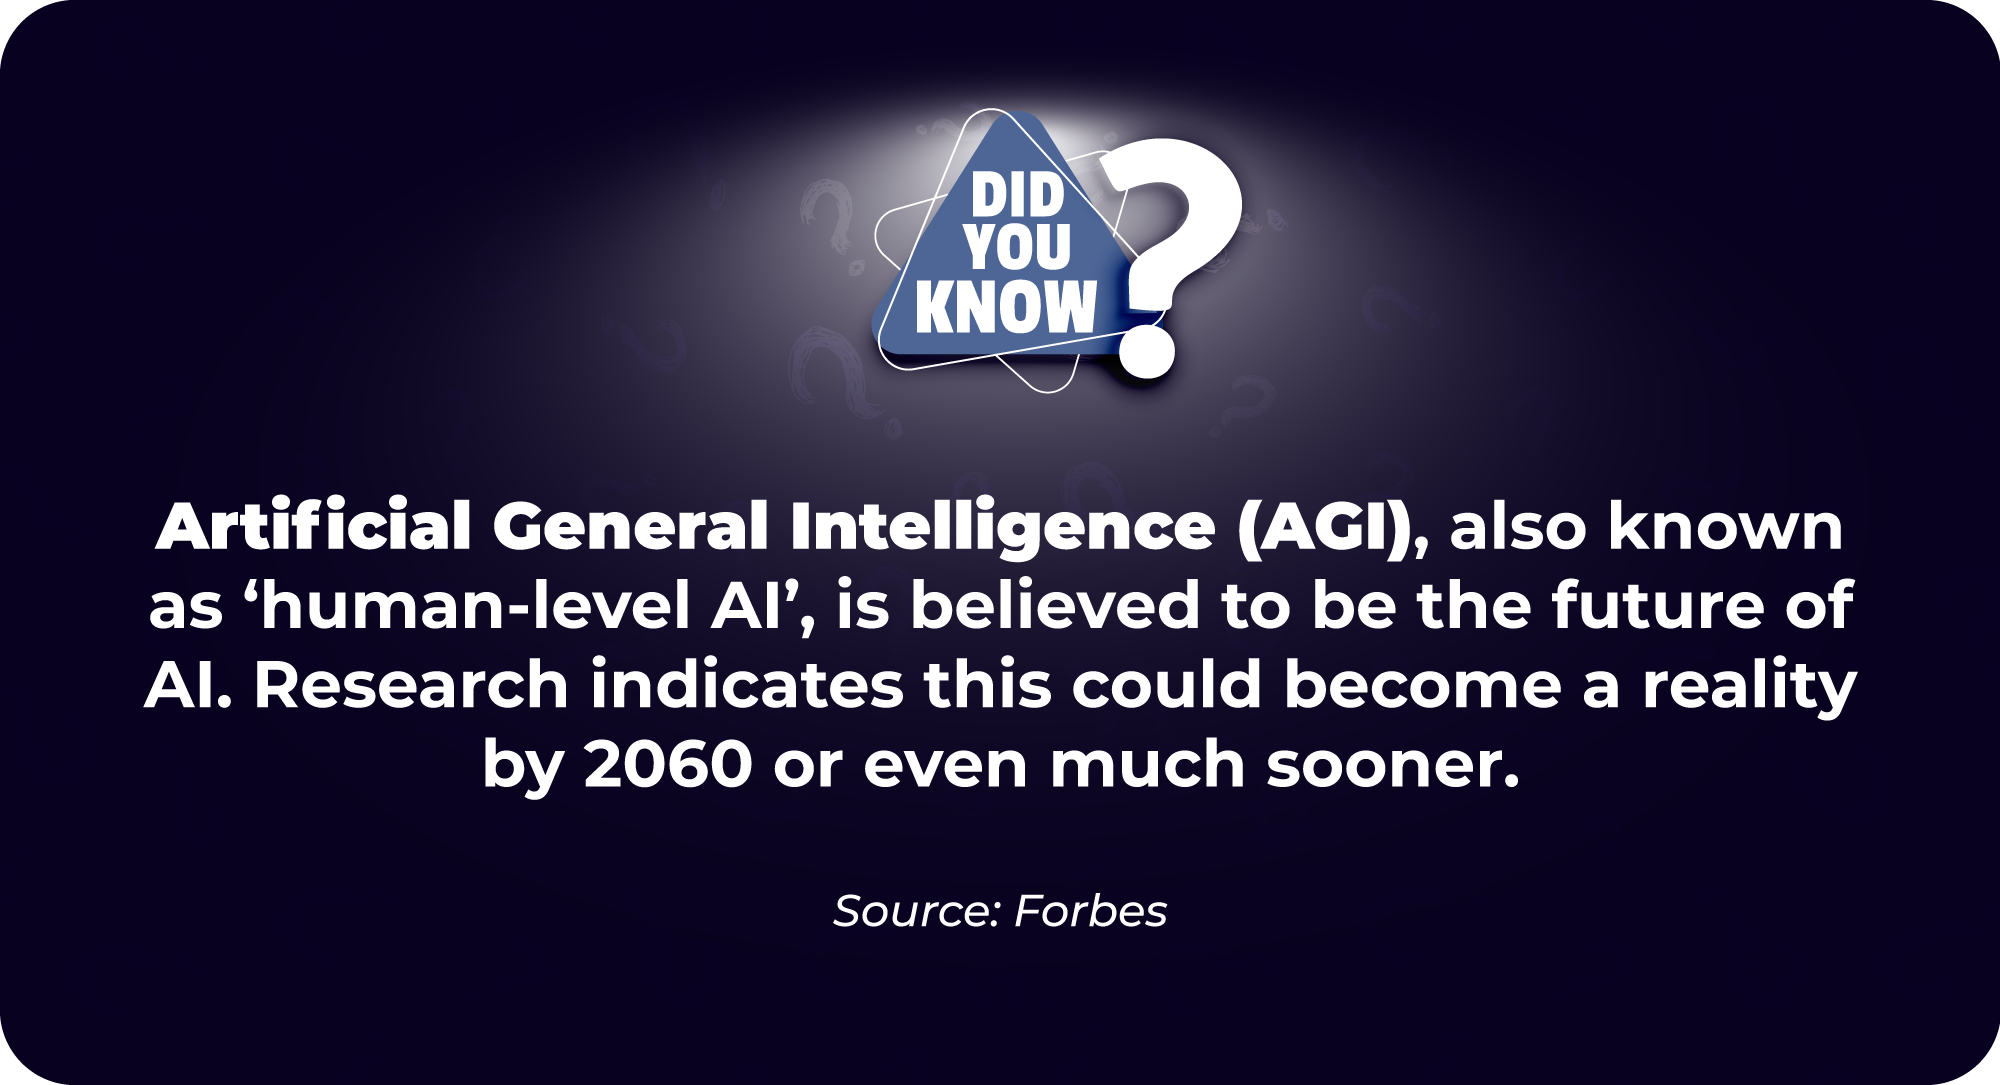 The future of AI is AGI